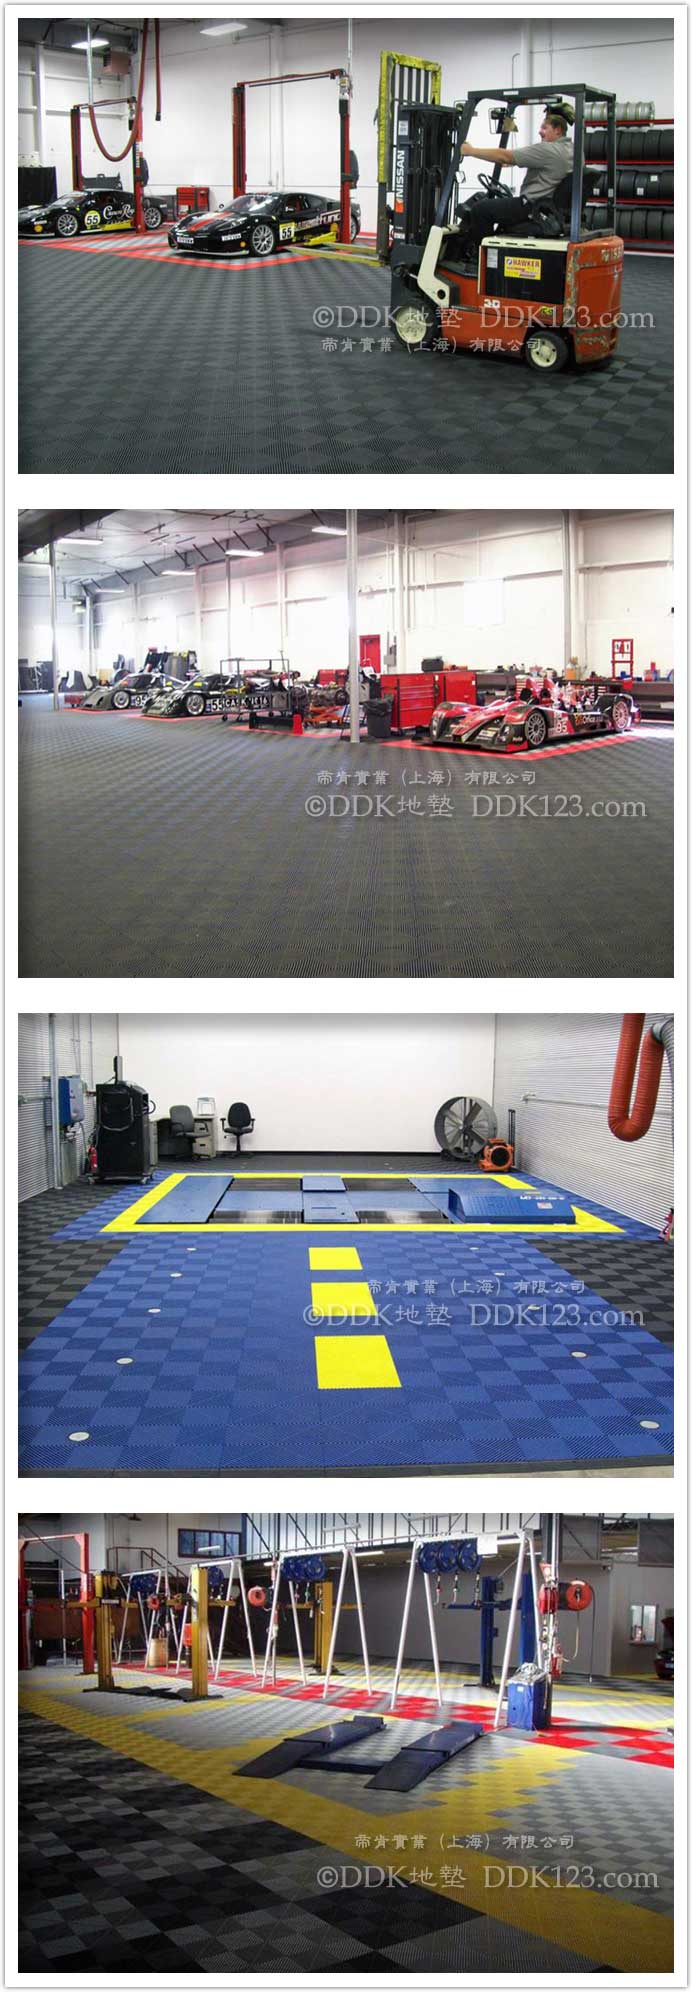 拼装地板,镂空地板,网格地板,塑料地板,塑胶地板,疏水地板,栅格地板,模块组合地板